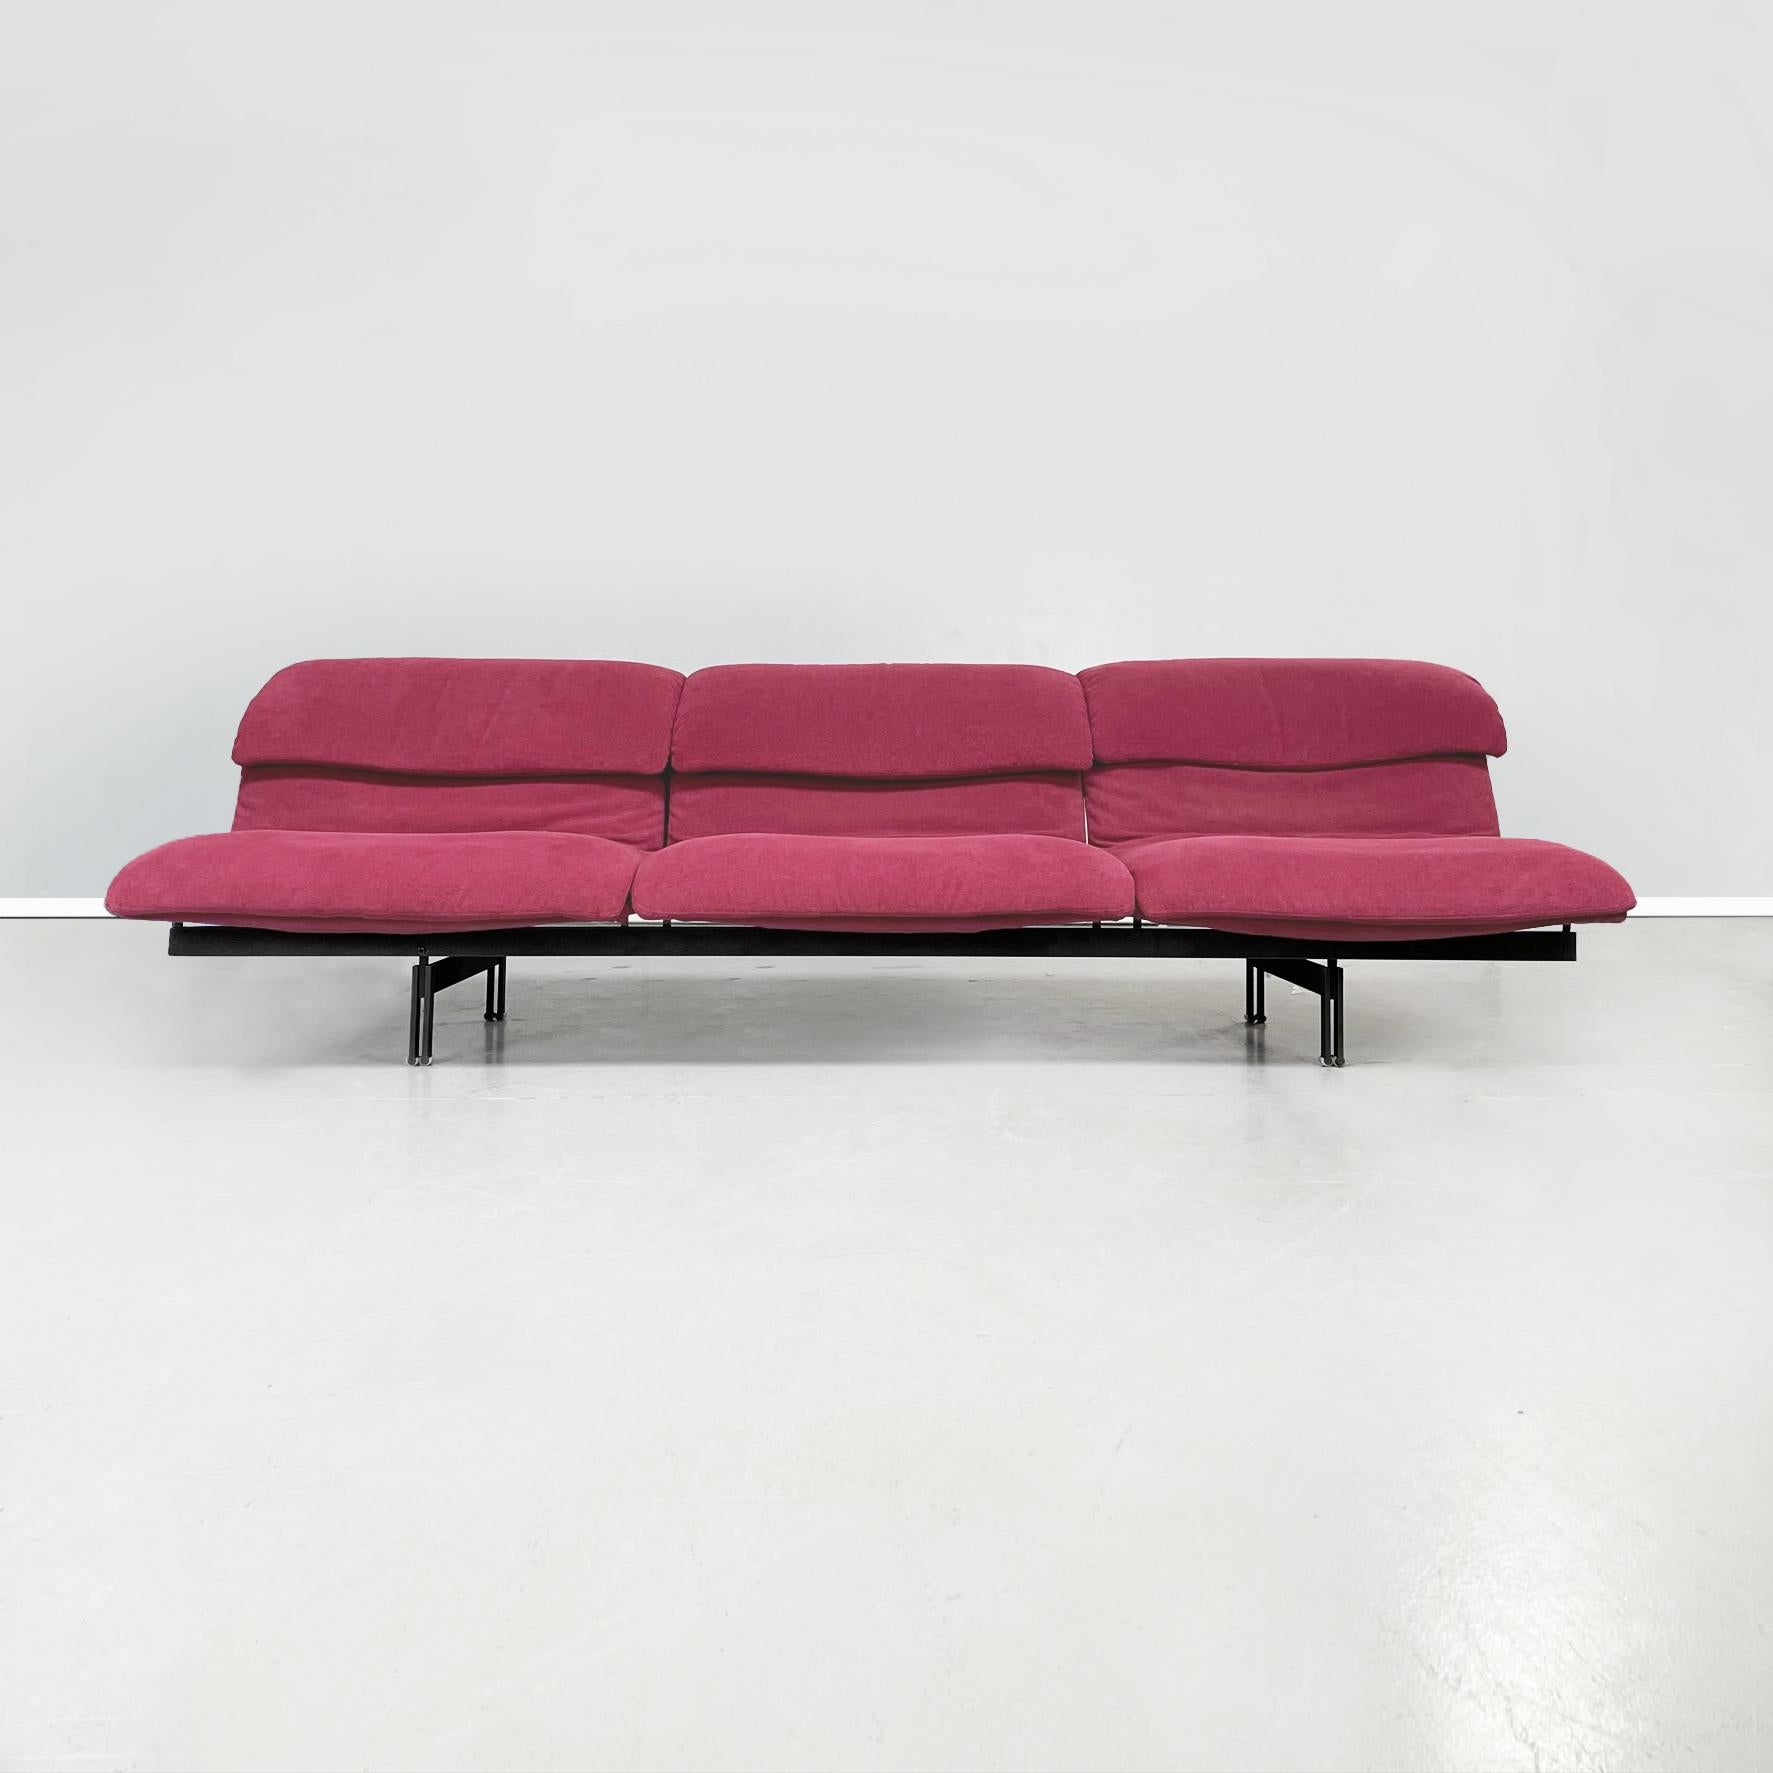 Italienisches 3-Sitzer-Sofa Wave von Giovanni Offredi für Saporiti, Mitte des Jahrhunderts, 1970er Jahre
Dreisitziges Sofa Mod. Wave mit rechteckigem Sitz. Sitz und Rückenlehne bestehen aus geschwungenen, gepolsterten Kissen, die mit einem